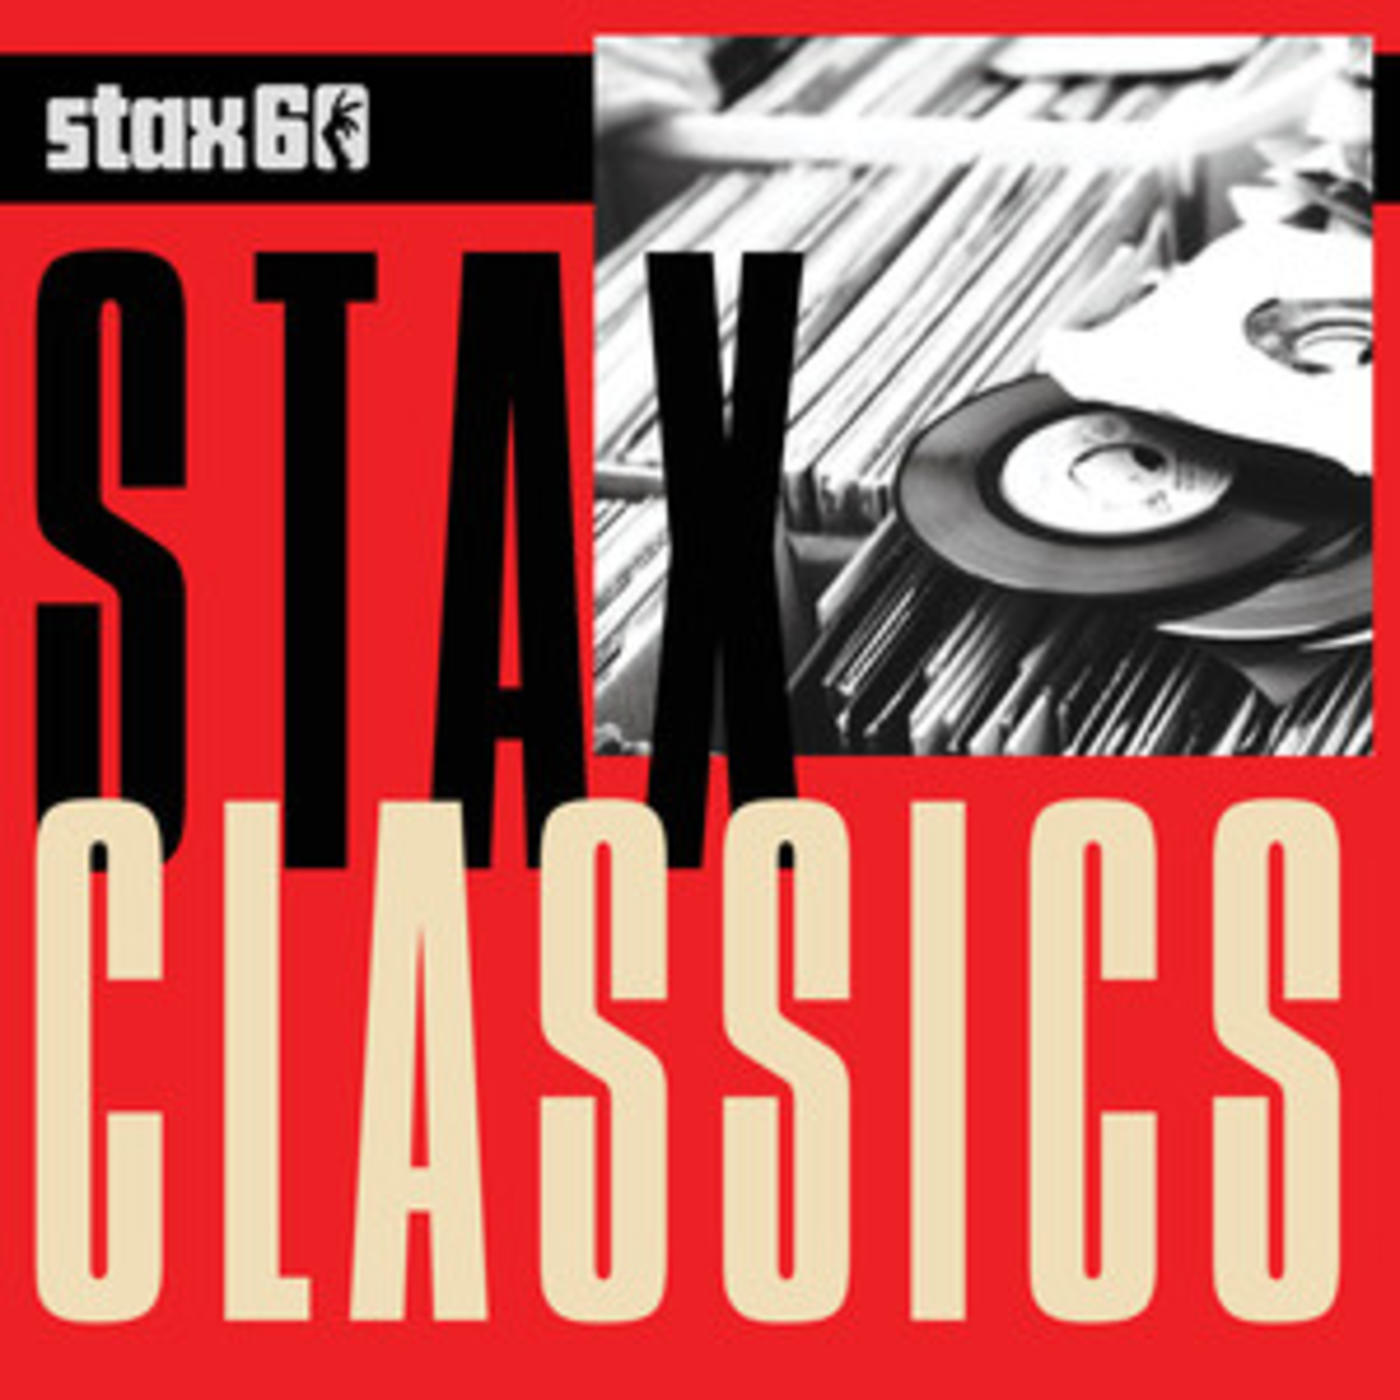 Stax Classics